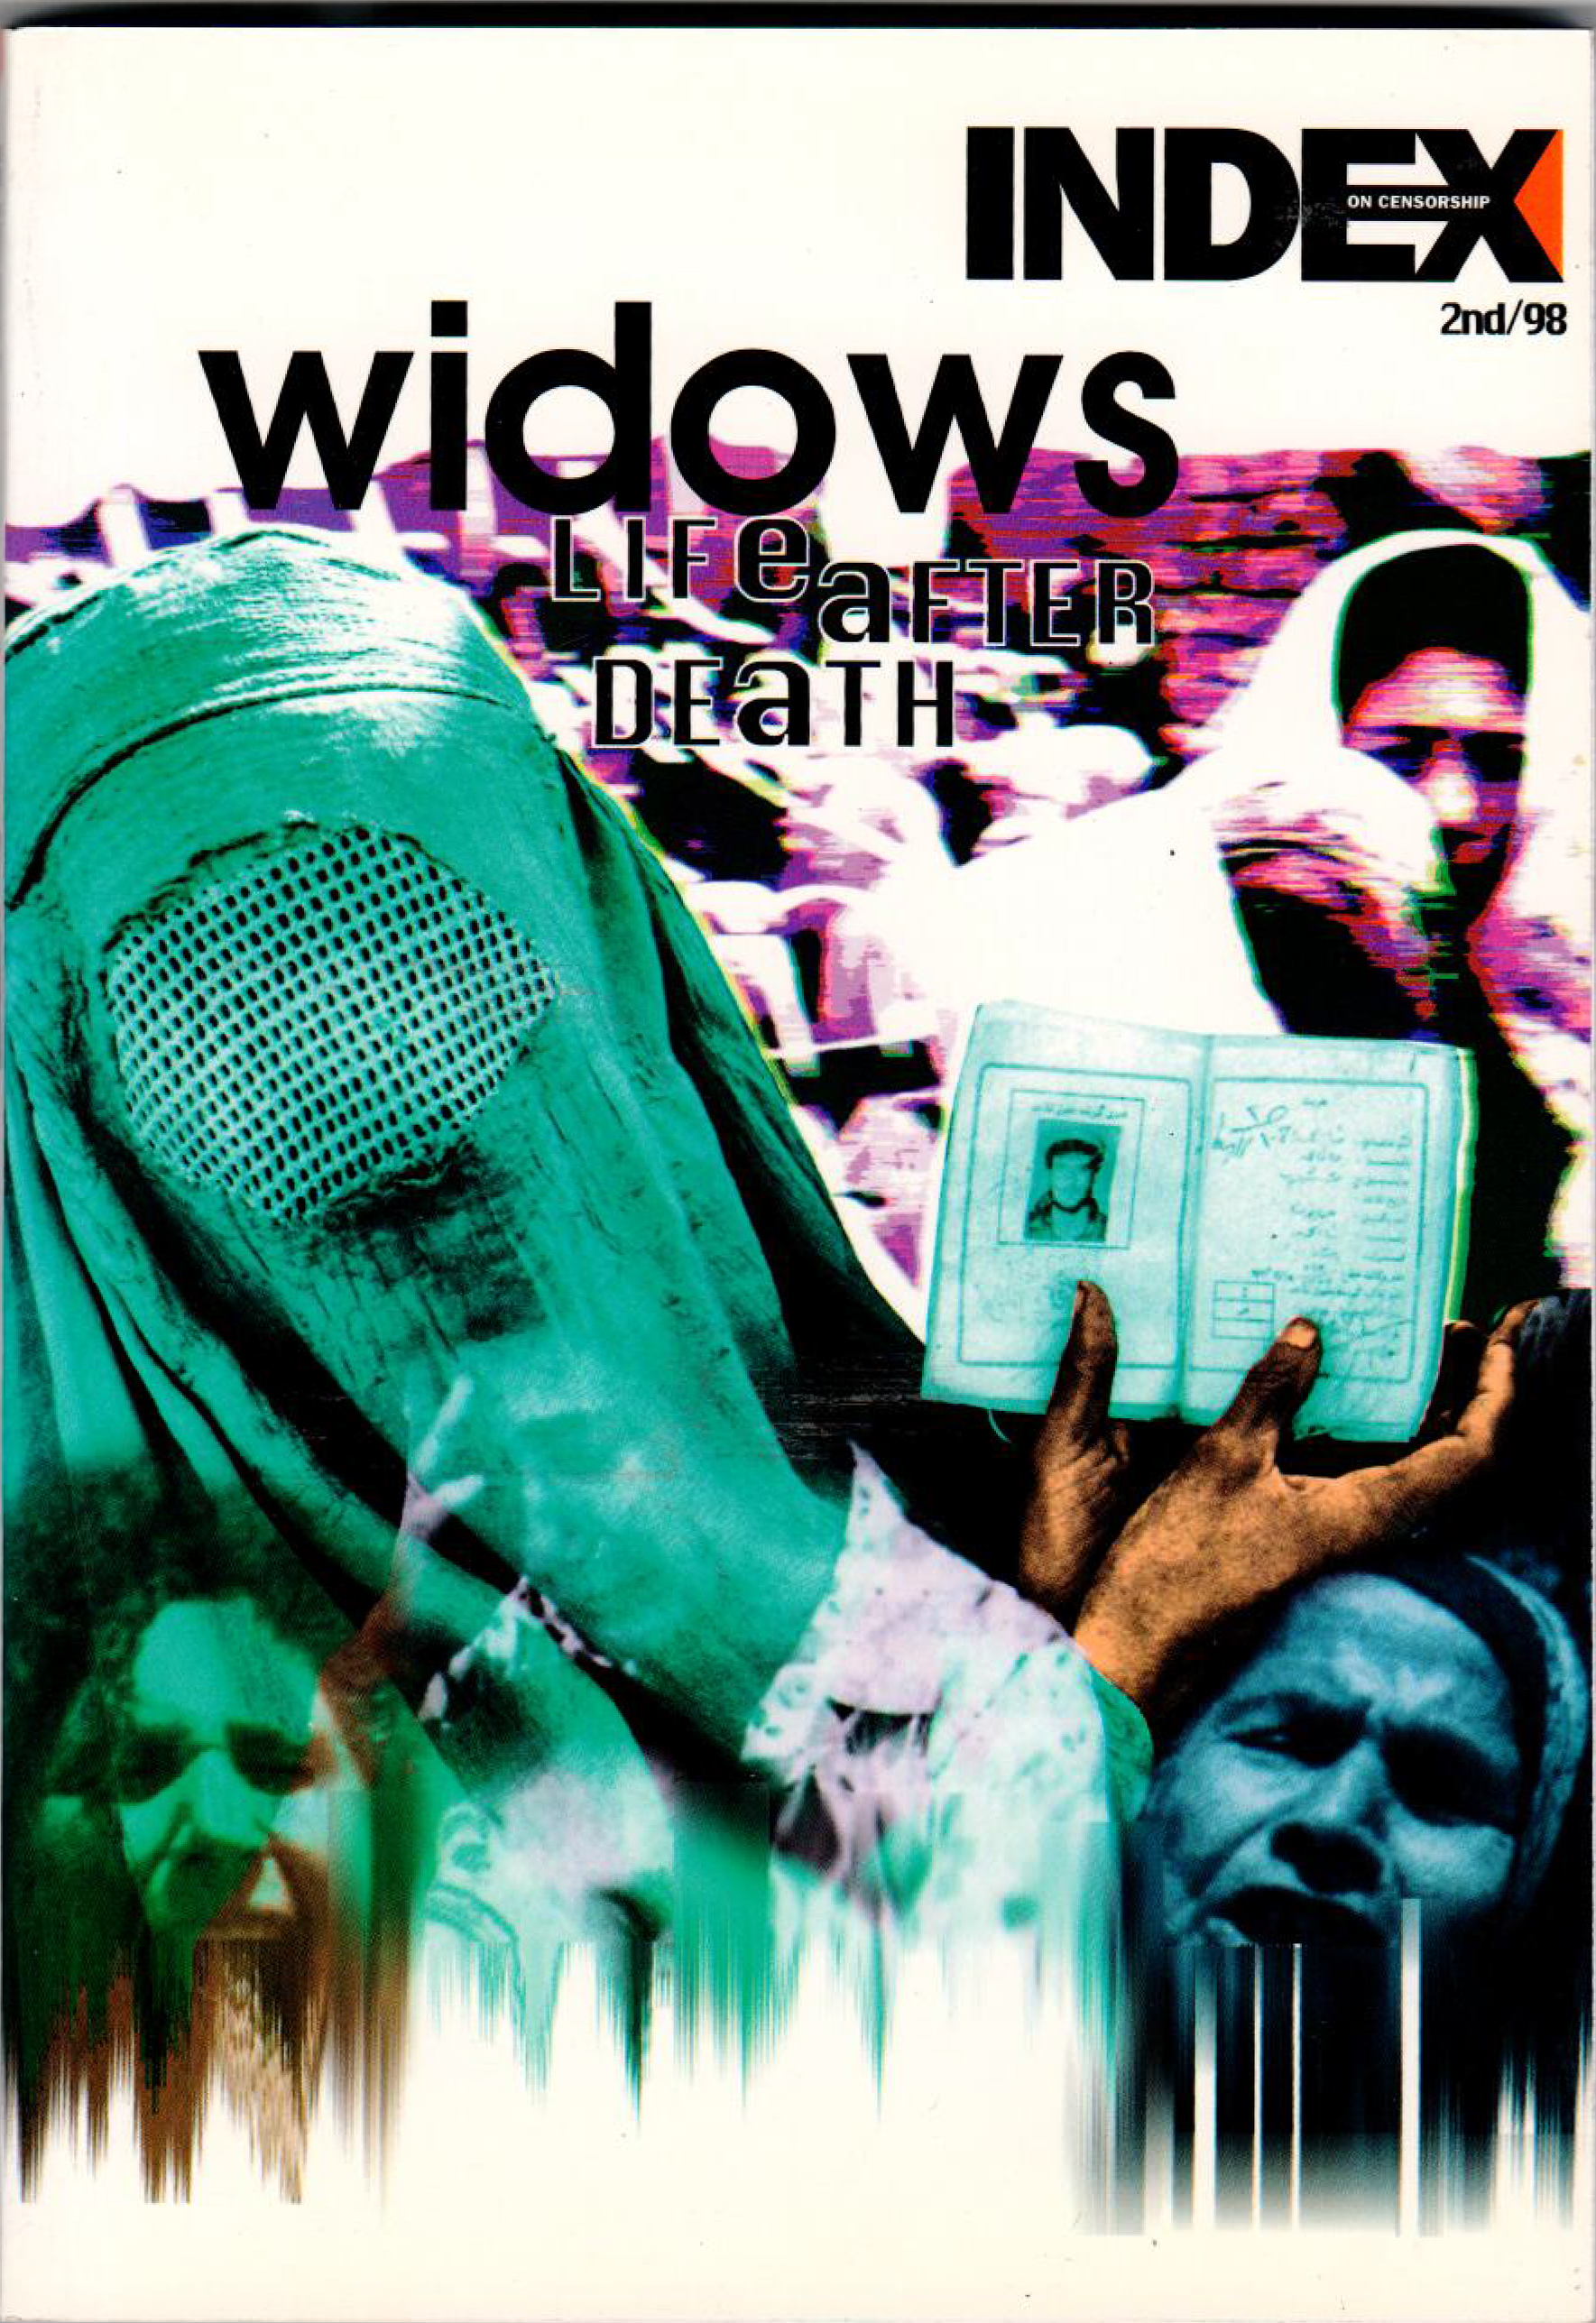 Widows: Life after death